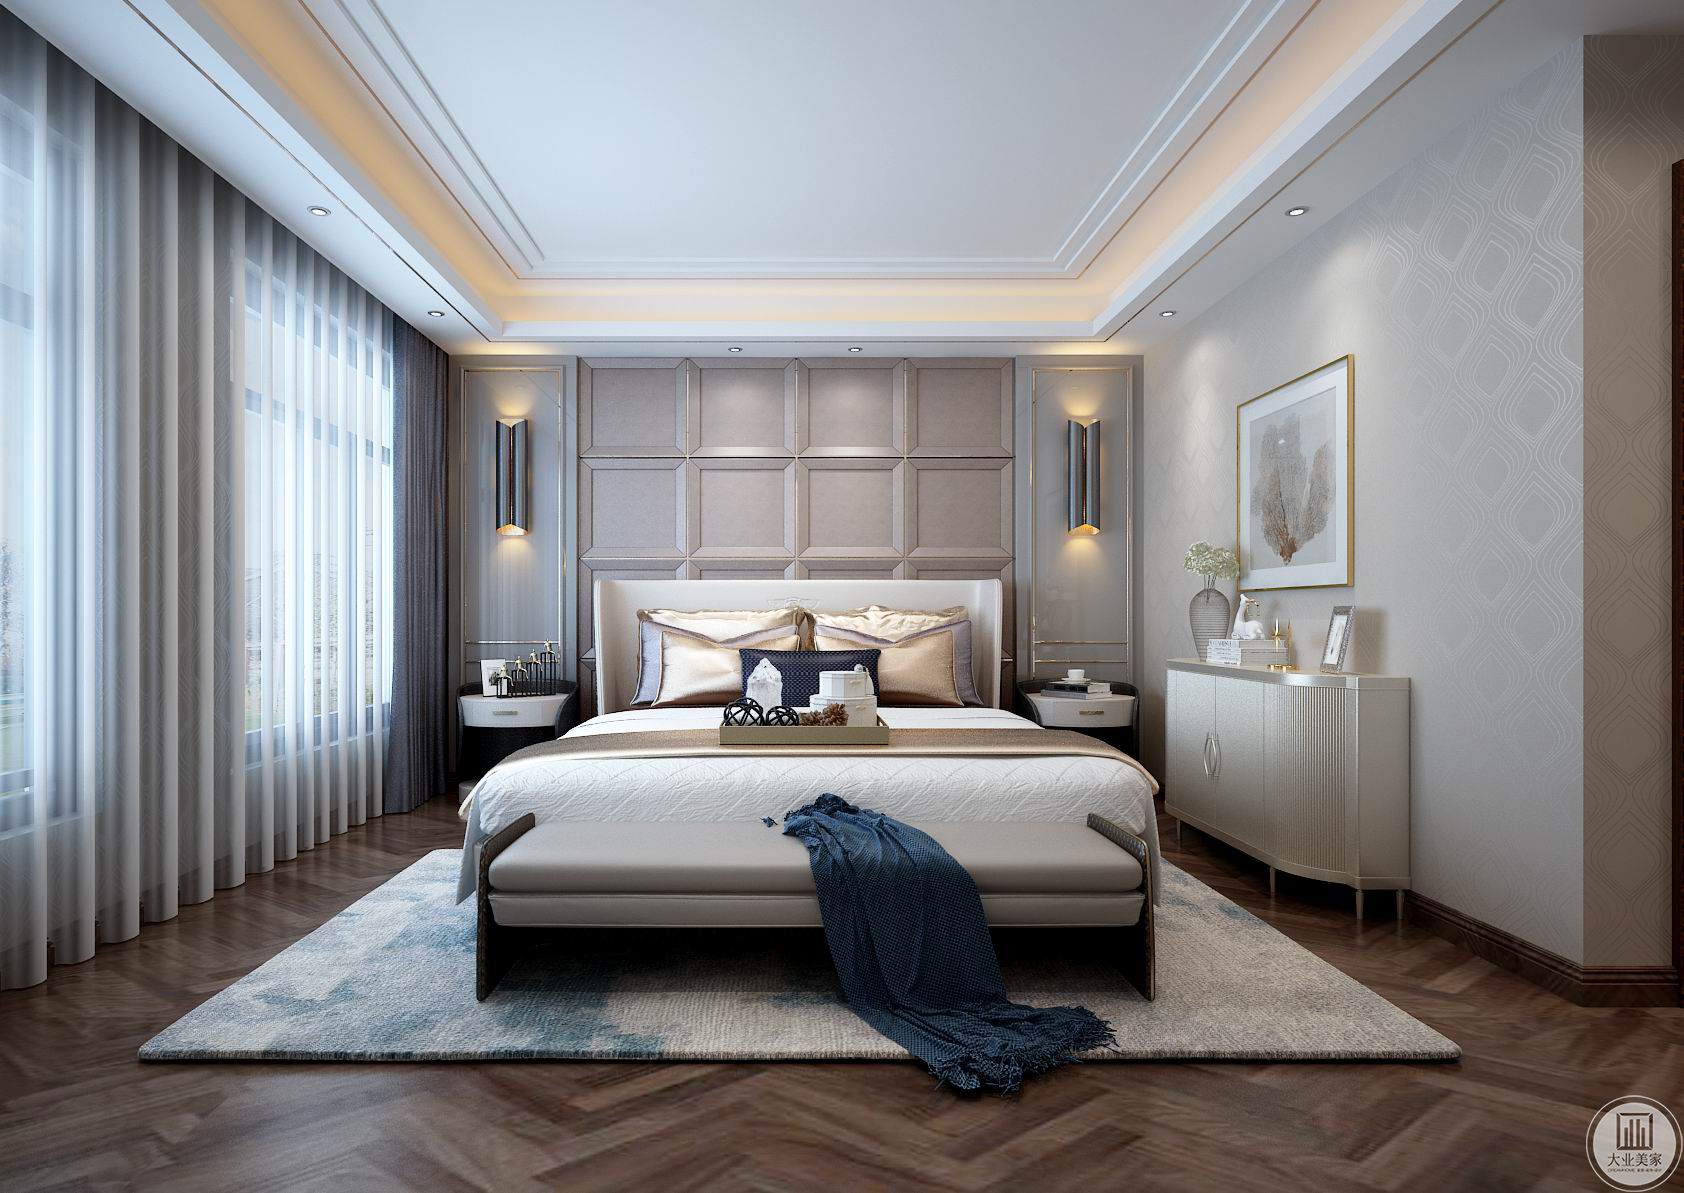 卧室整体效果图-主卧室相对来说比较简单明了的设计，一个宛如一块块巧克力的形状床头背景墙，更显浪漫温馨的卧室。